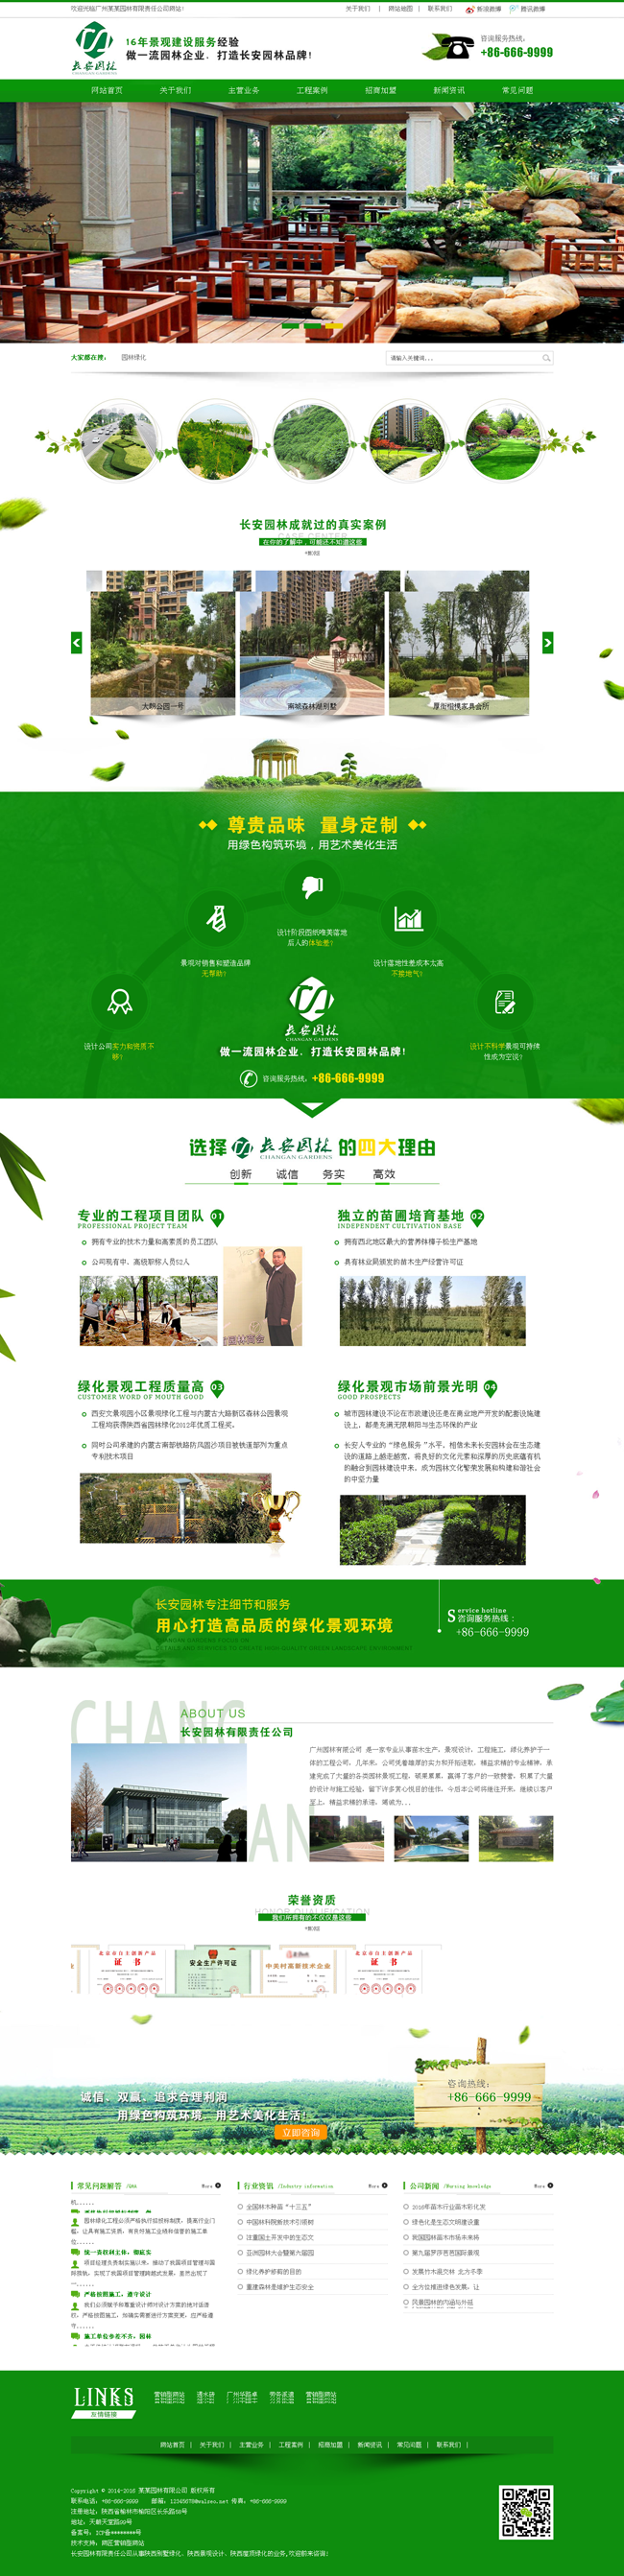 营销型绿色市政园林绿化行业网站织梦模板